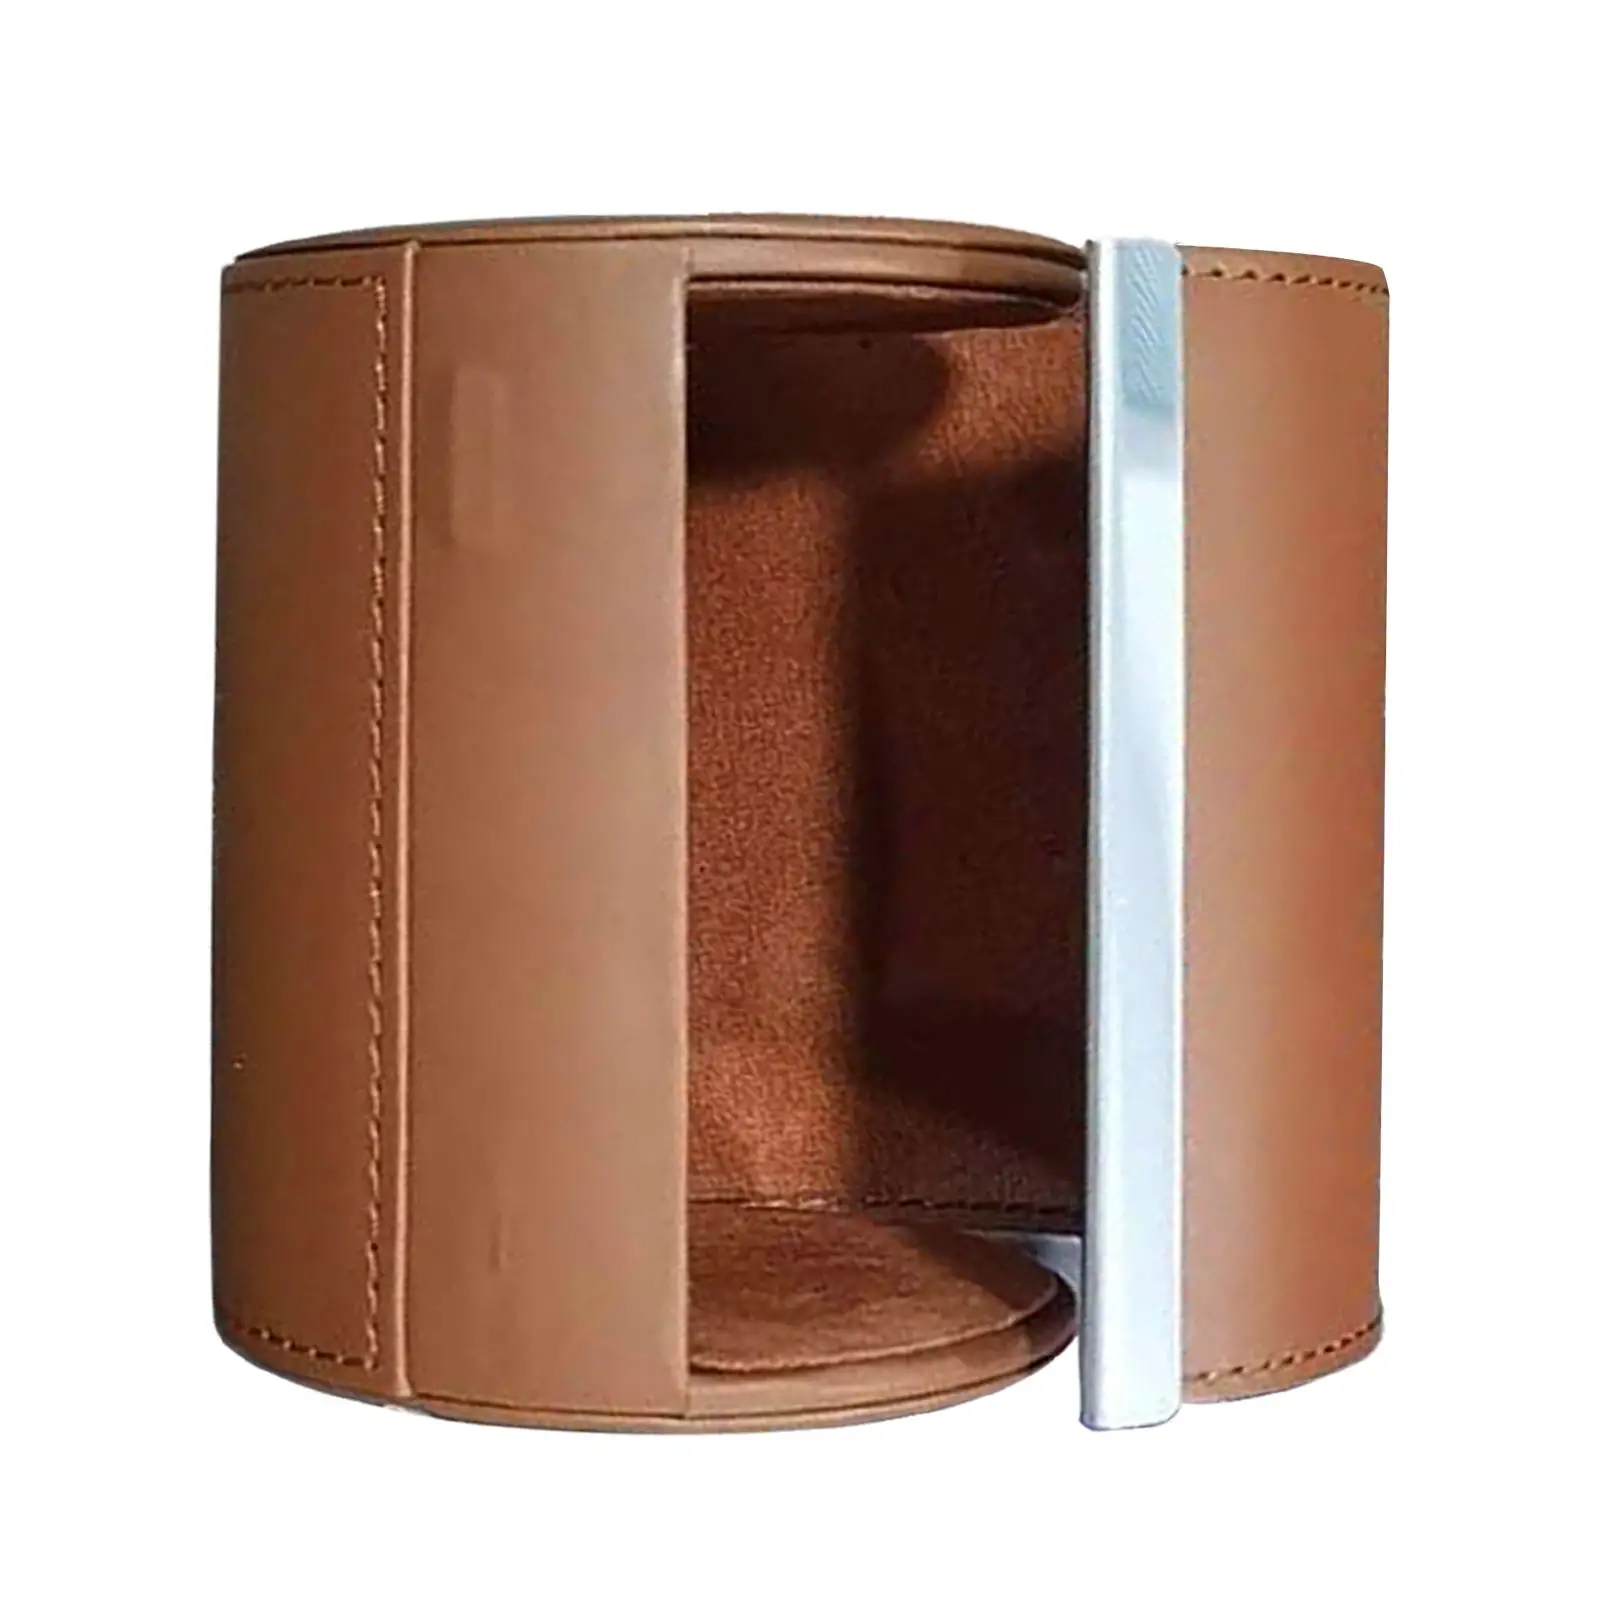 Travel Tie Case Tie Organizer Box Pu Leather Tie Case Travel Business Gift PU Leather 8.5cmx11cm Storage Case Tie Box Men